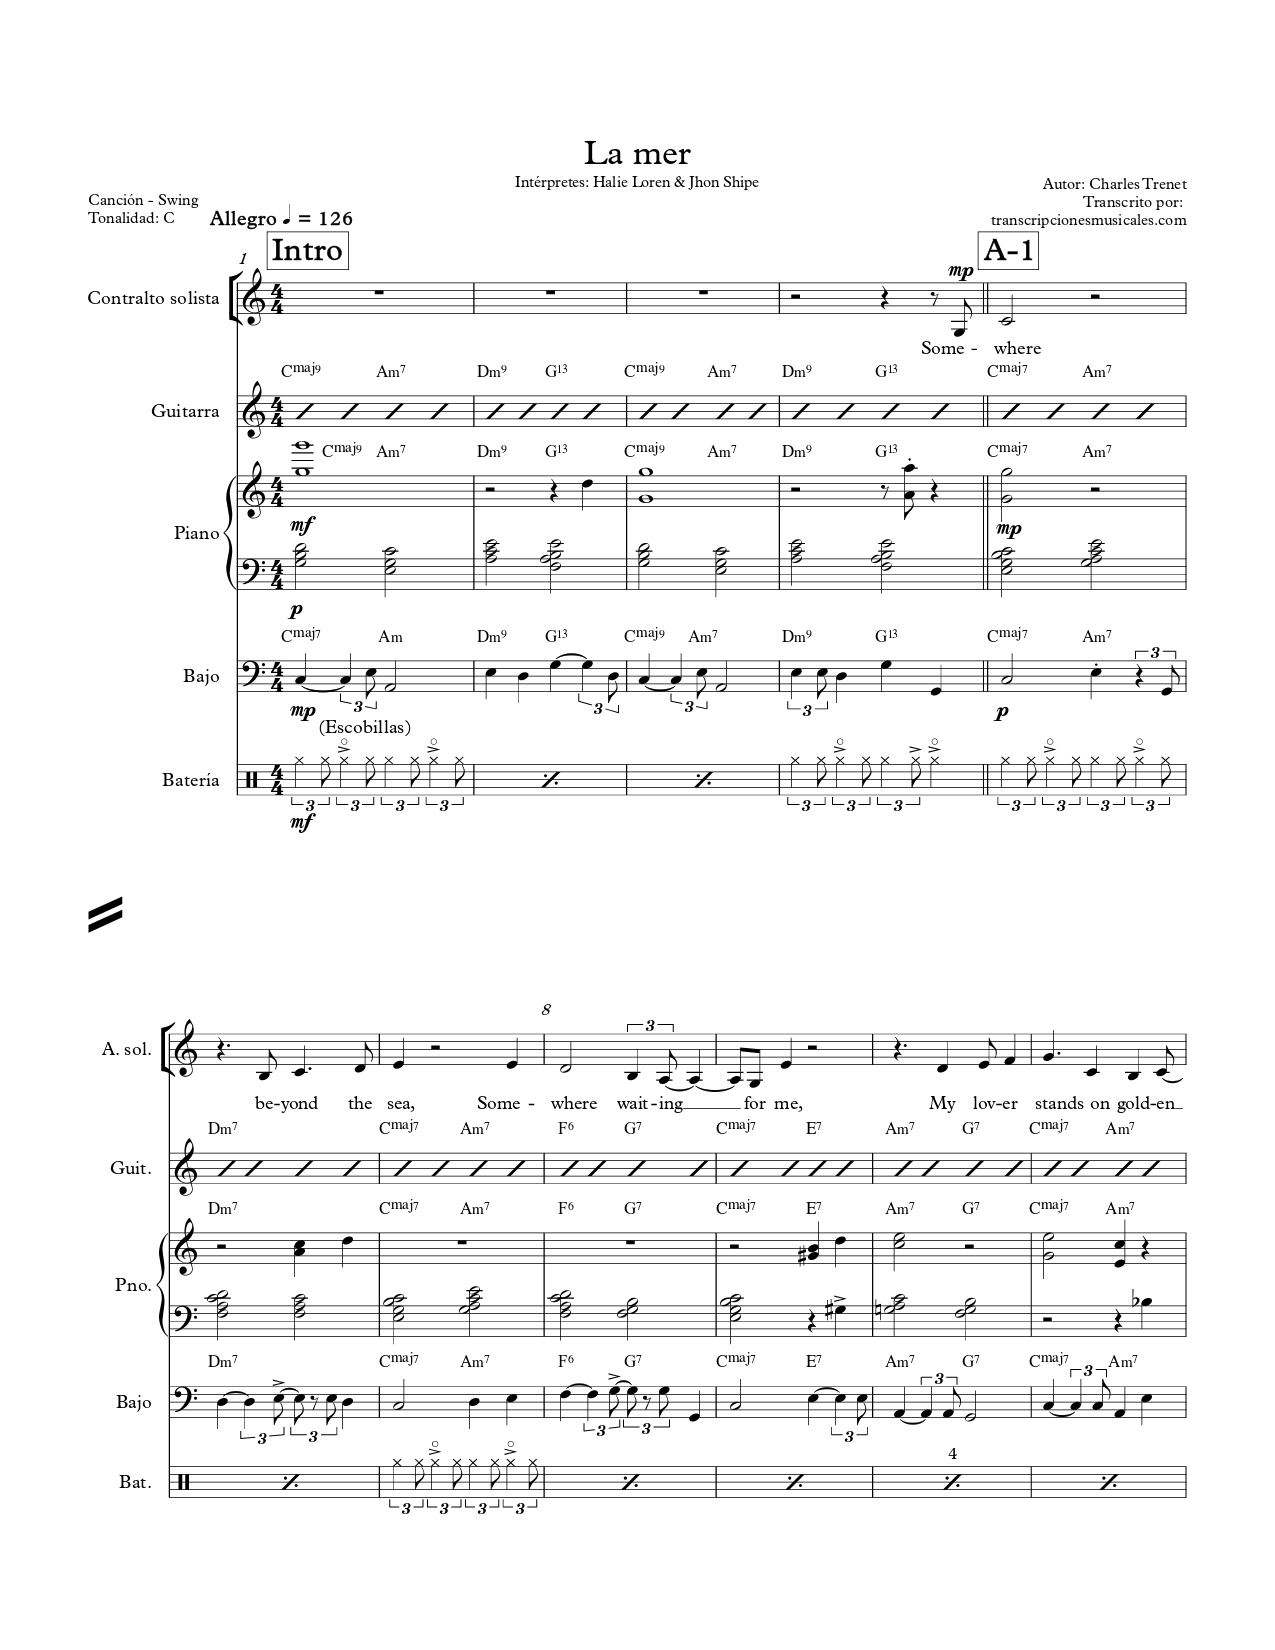 La mer - sheet music page 1